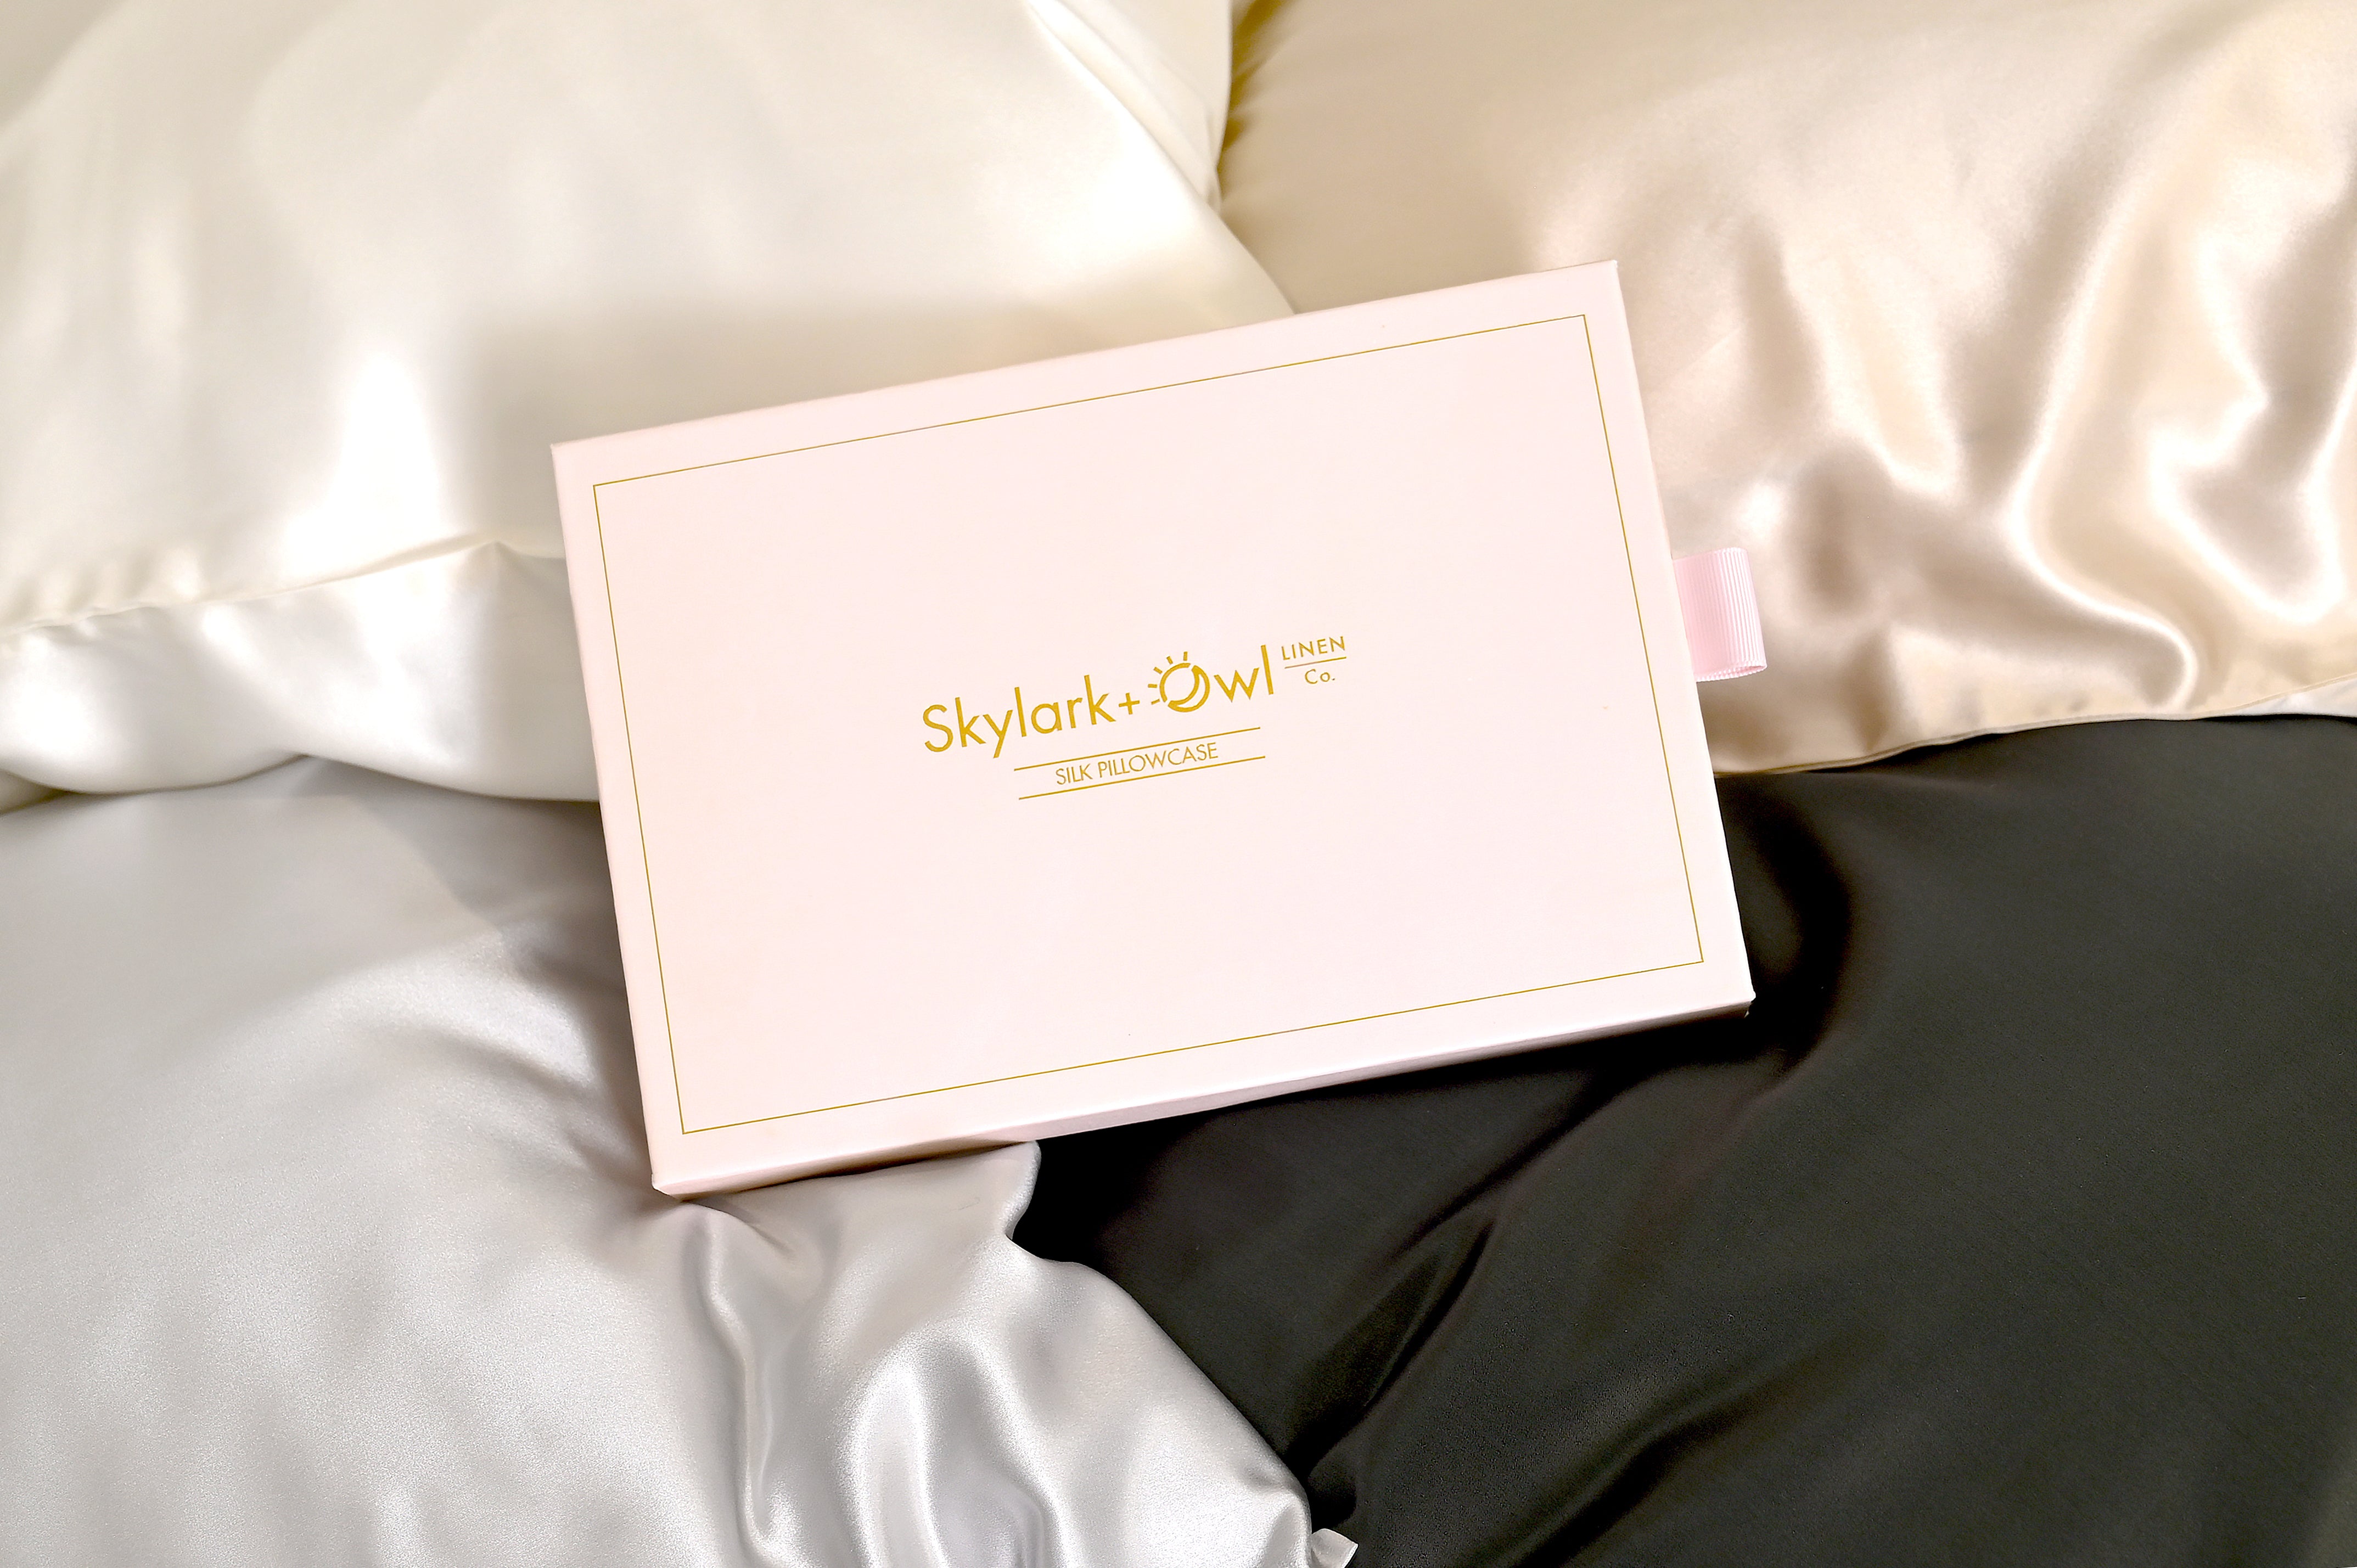 Skylark+Owl Silk Pillowcase luxury box 